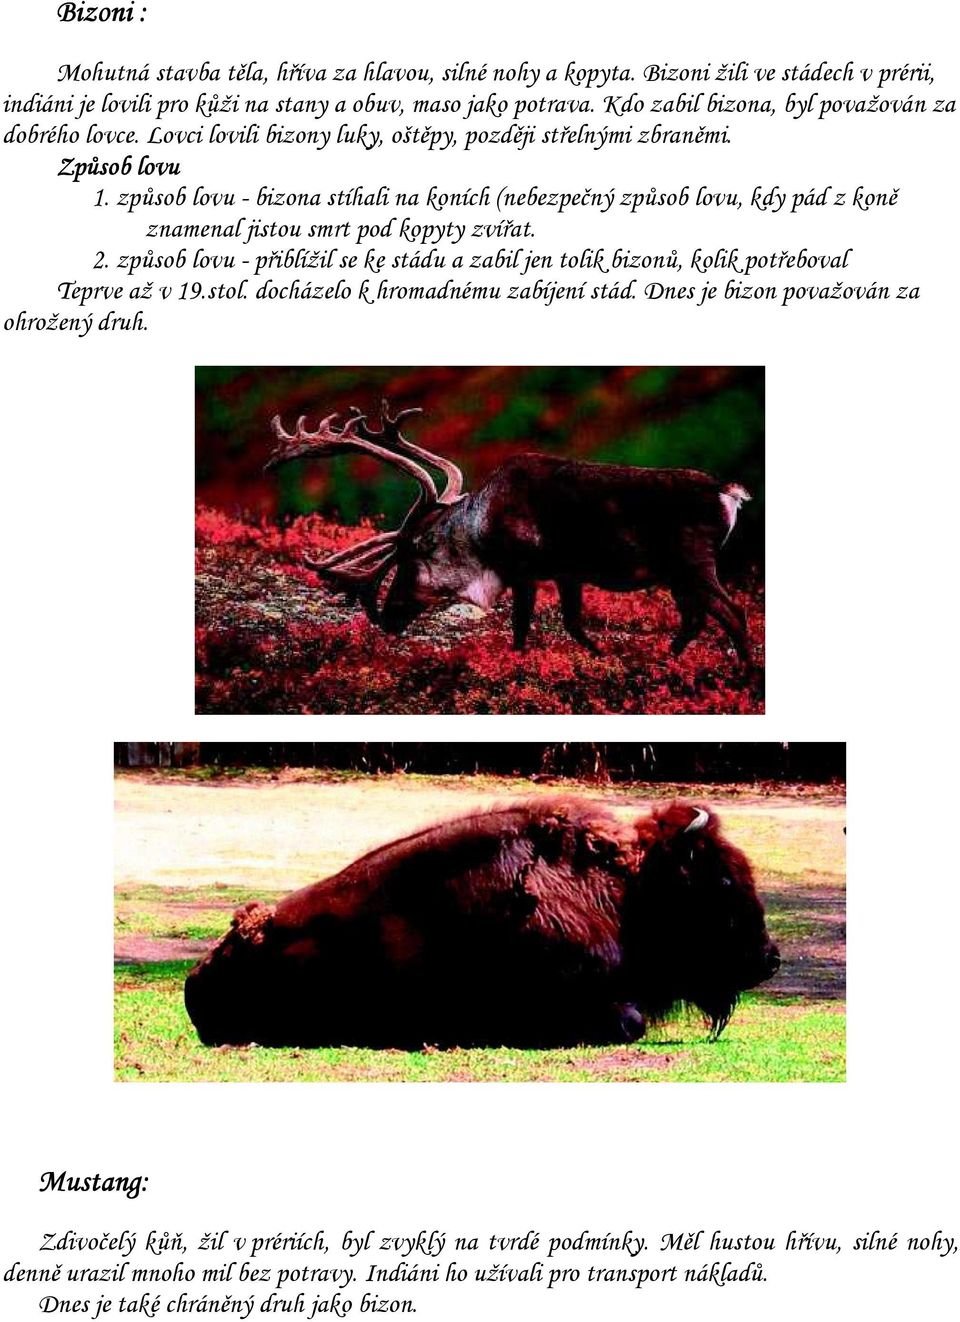 způsob lovu - bizona stíhali na koních (nebezpečný způsob lovu, kdy pád z koně znamenal jistou smrt pod kopyty zvířat. 2.